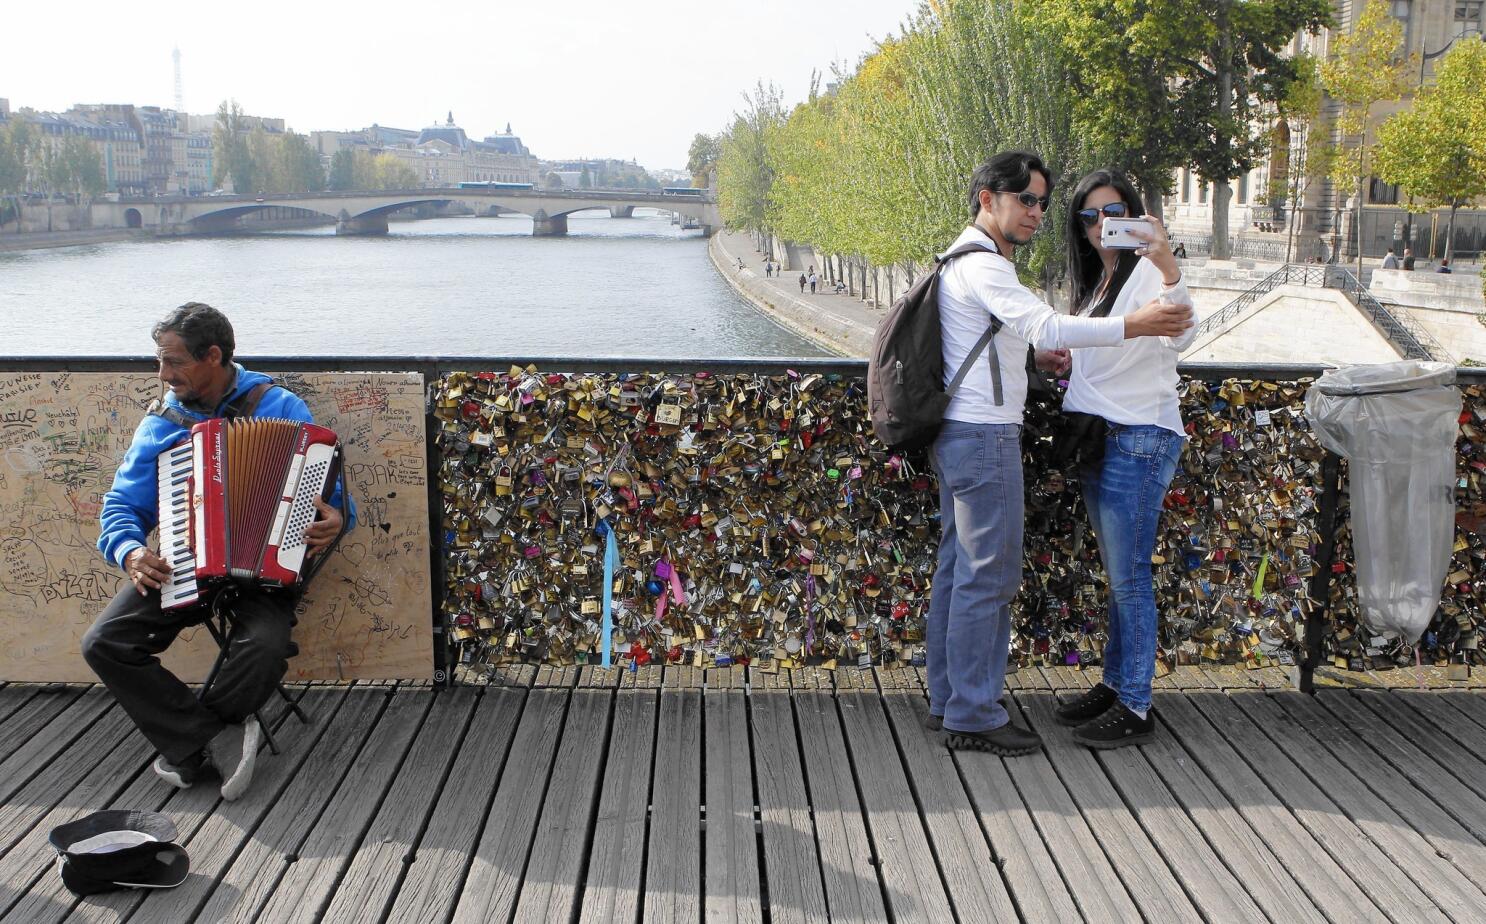 Pont Des Arts Paris: The Romantic Love Bridge Over The Seine